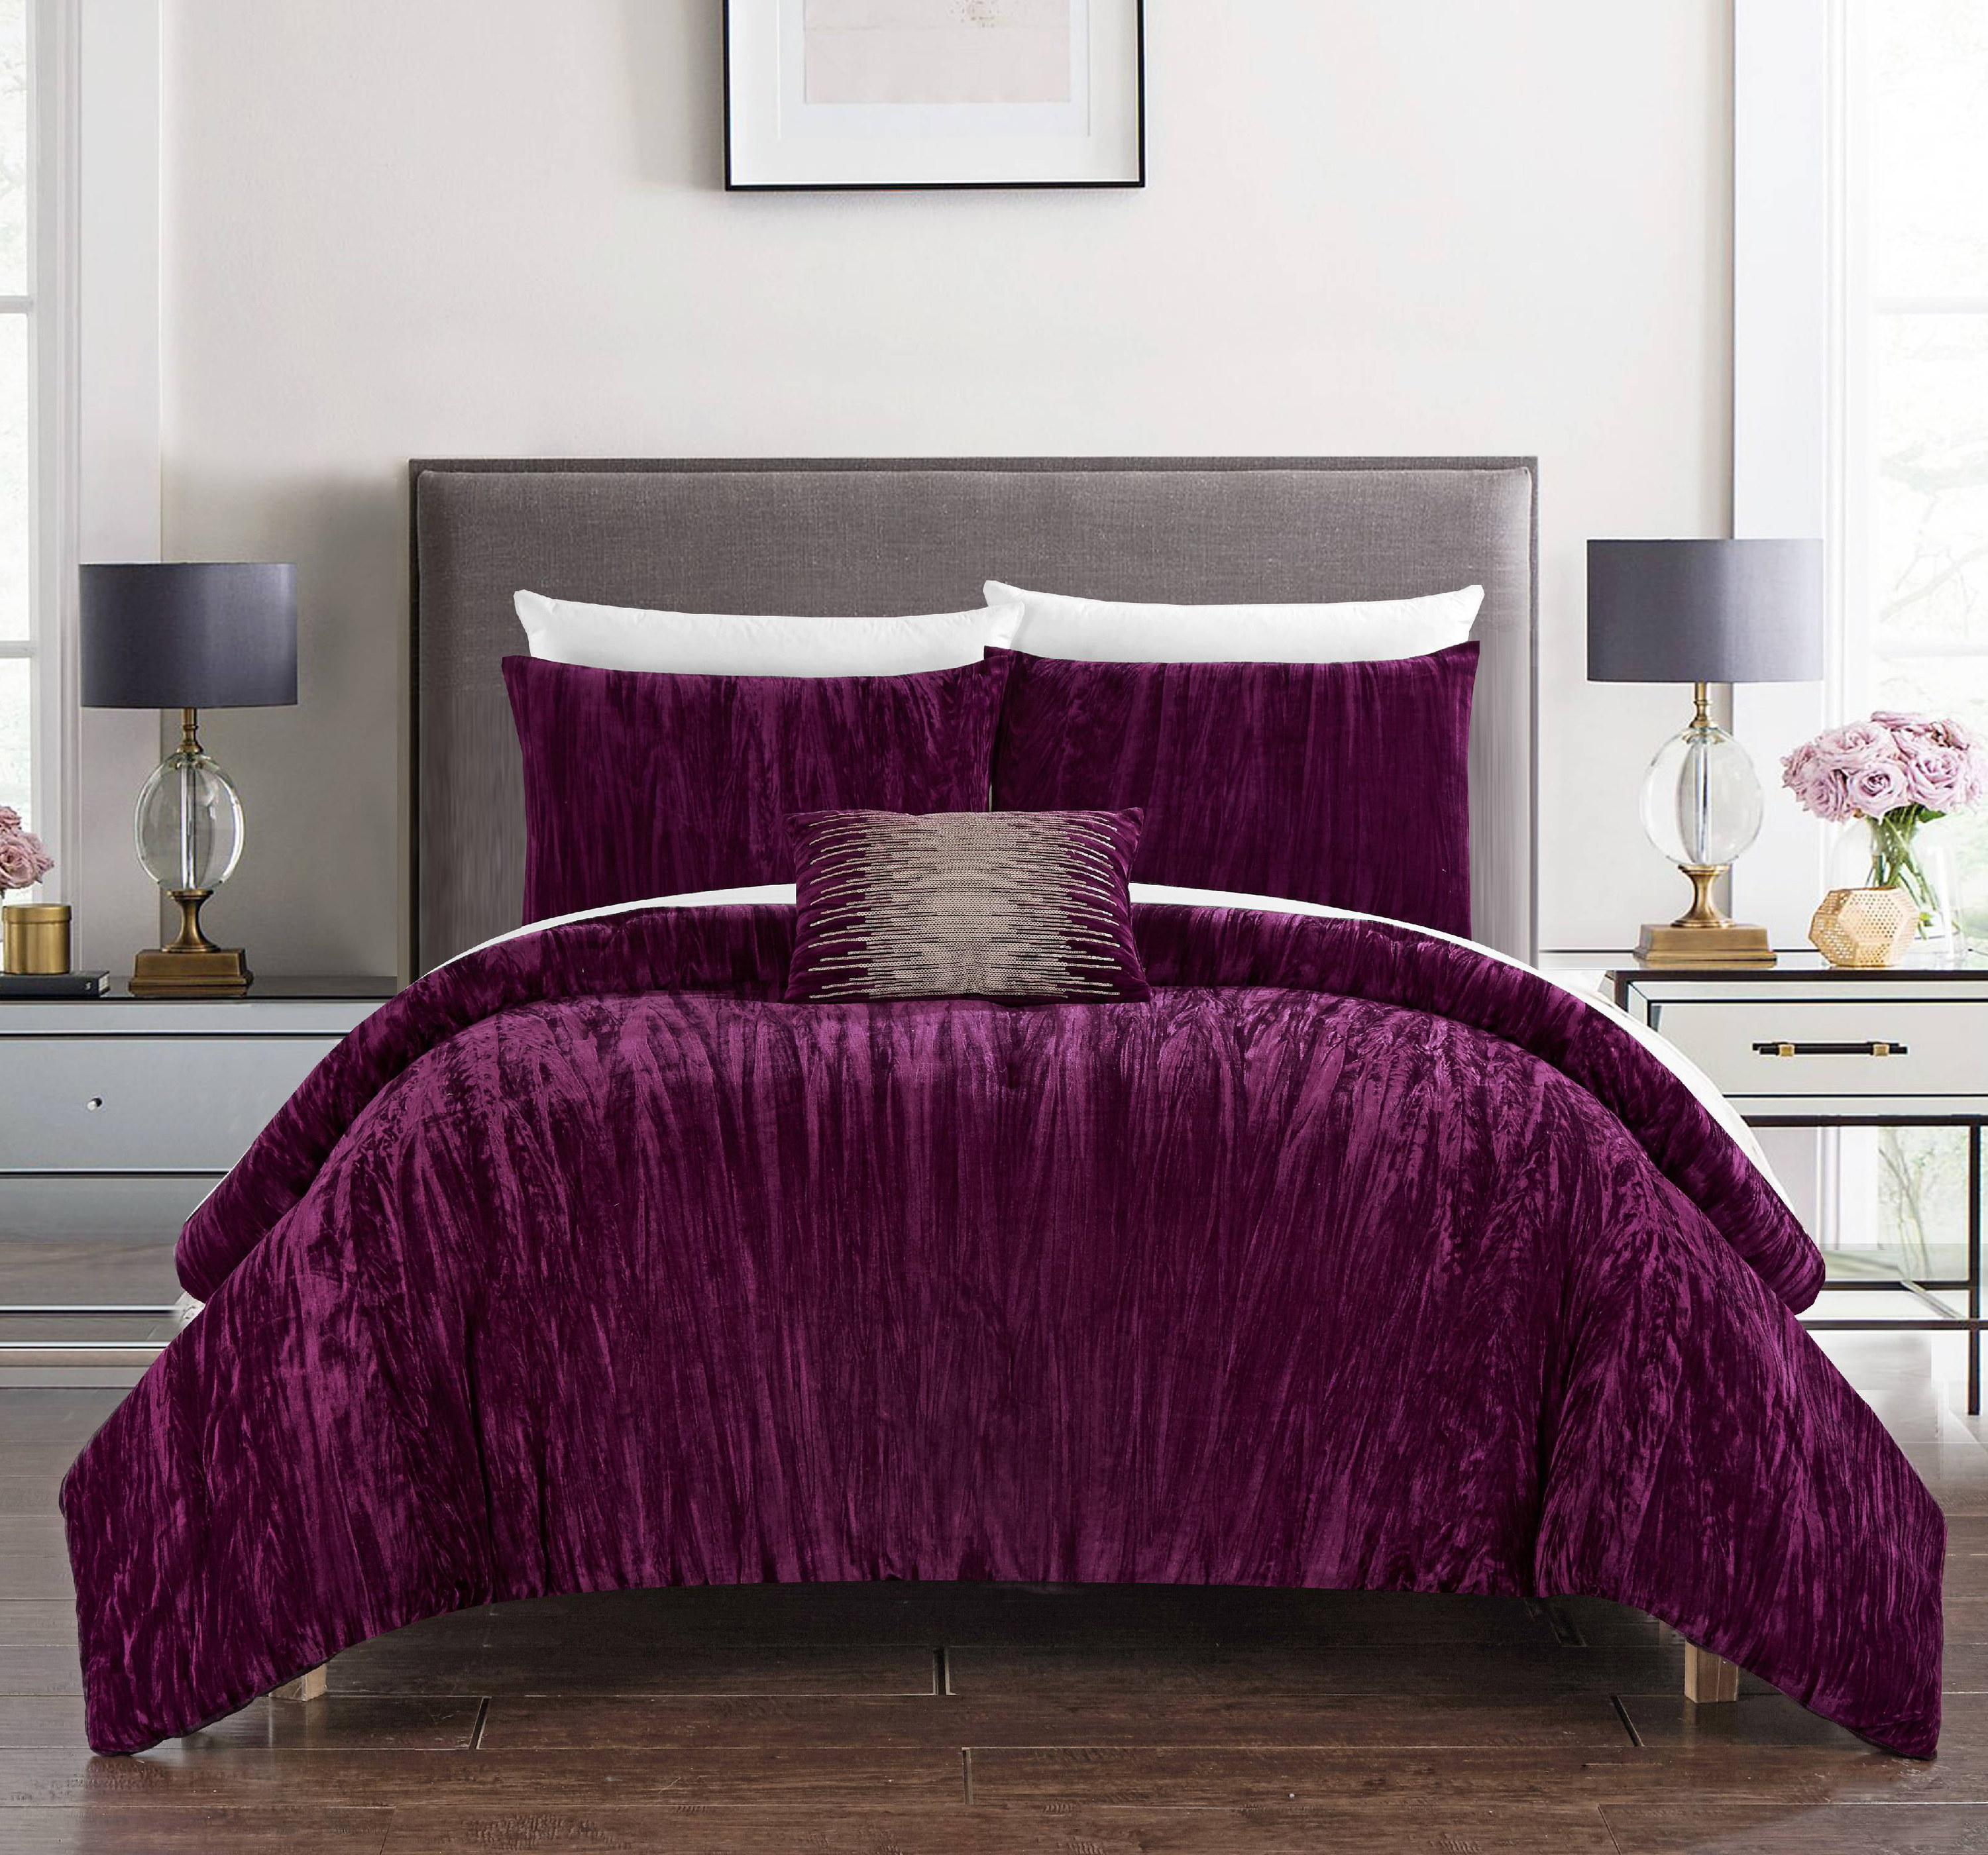 the velvet bedding in purple